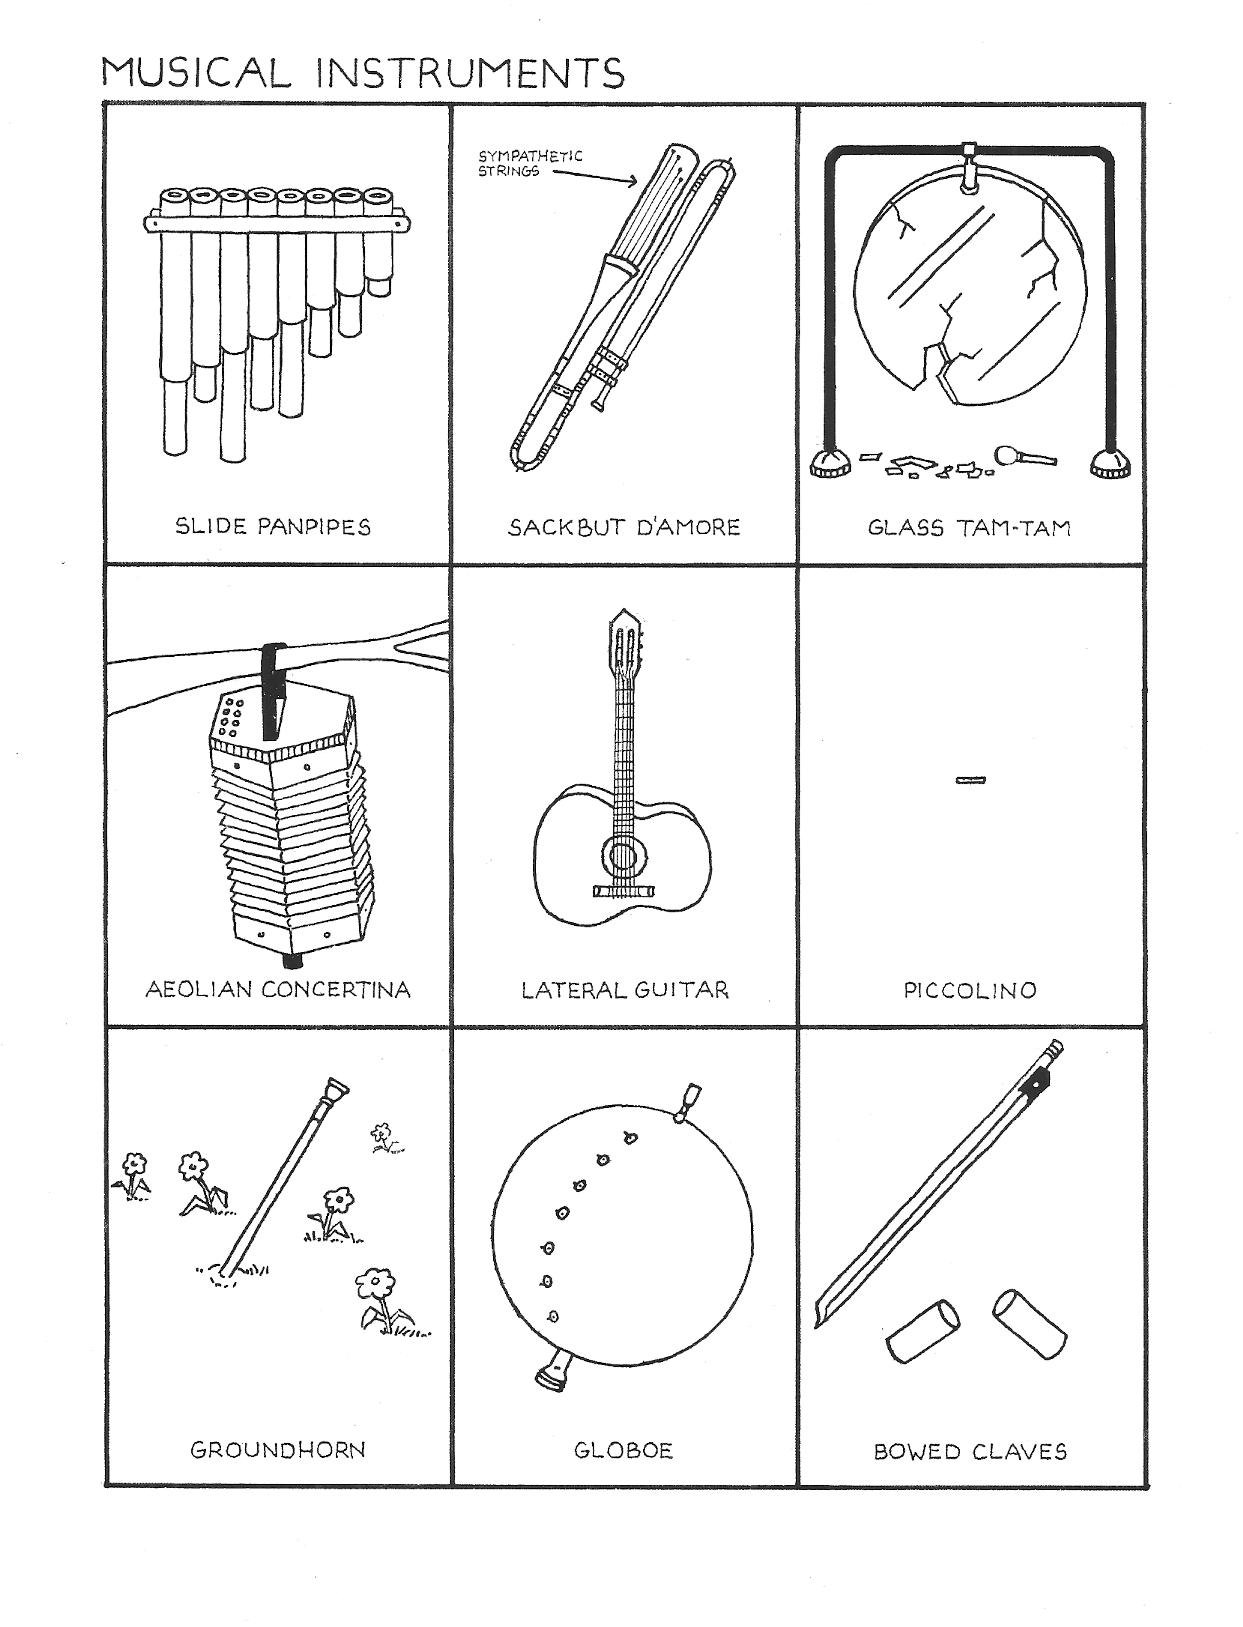 Схемы музыкальных инструментов. Музыкальные инструменты с названиями и картинками. Музыкальные инструменты 2 класс. Схема музыкальных инструментов. Музыкальные инструменты картинки для детей с названиями.